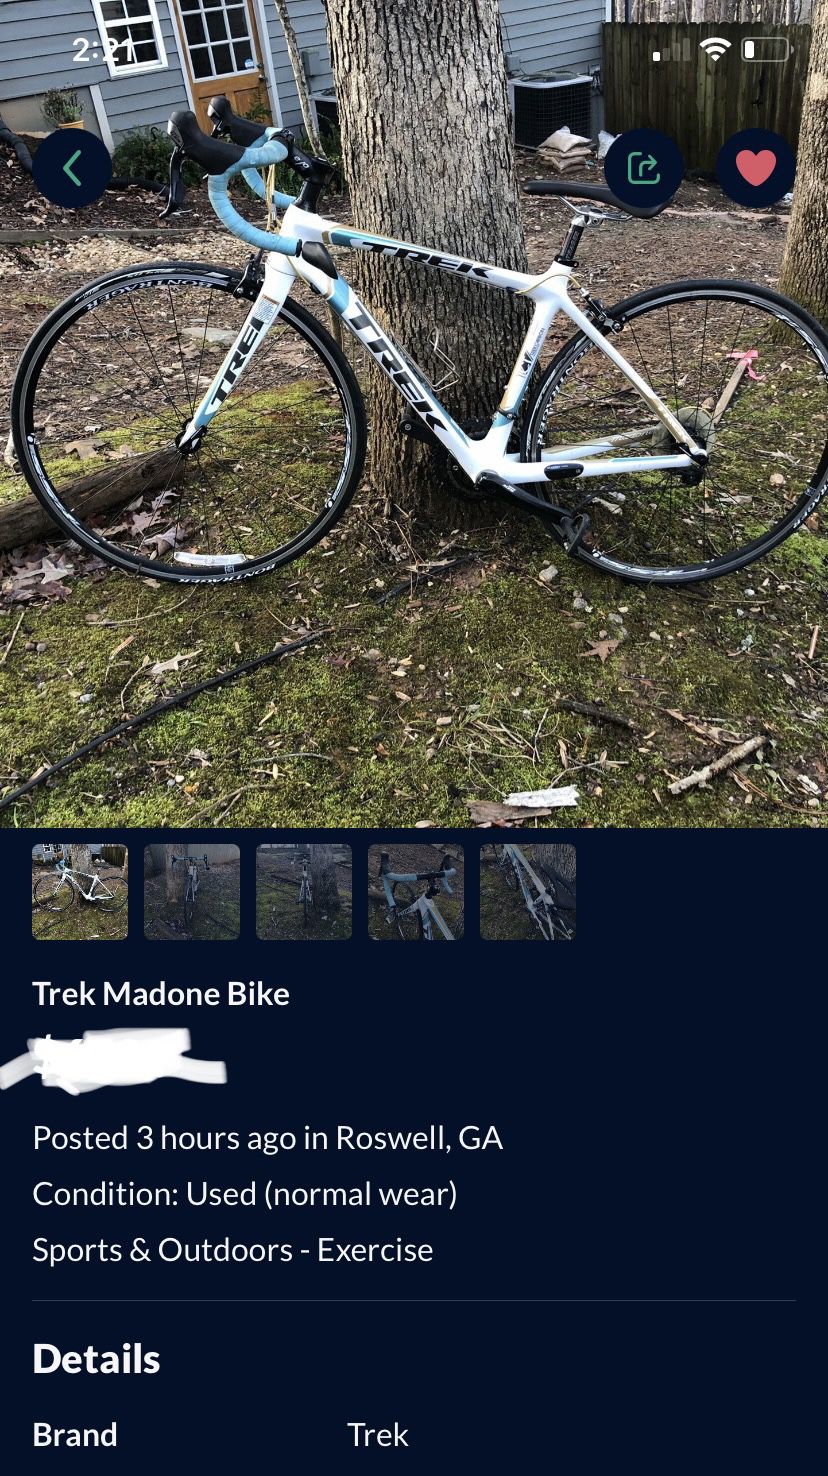 Trek Madone bike